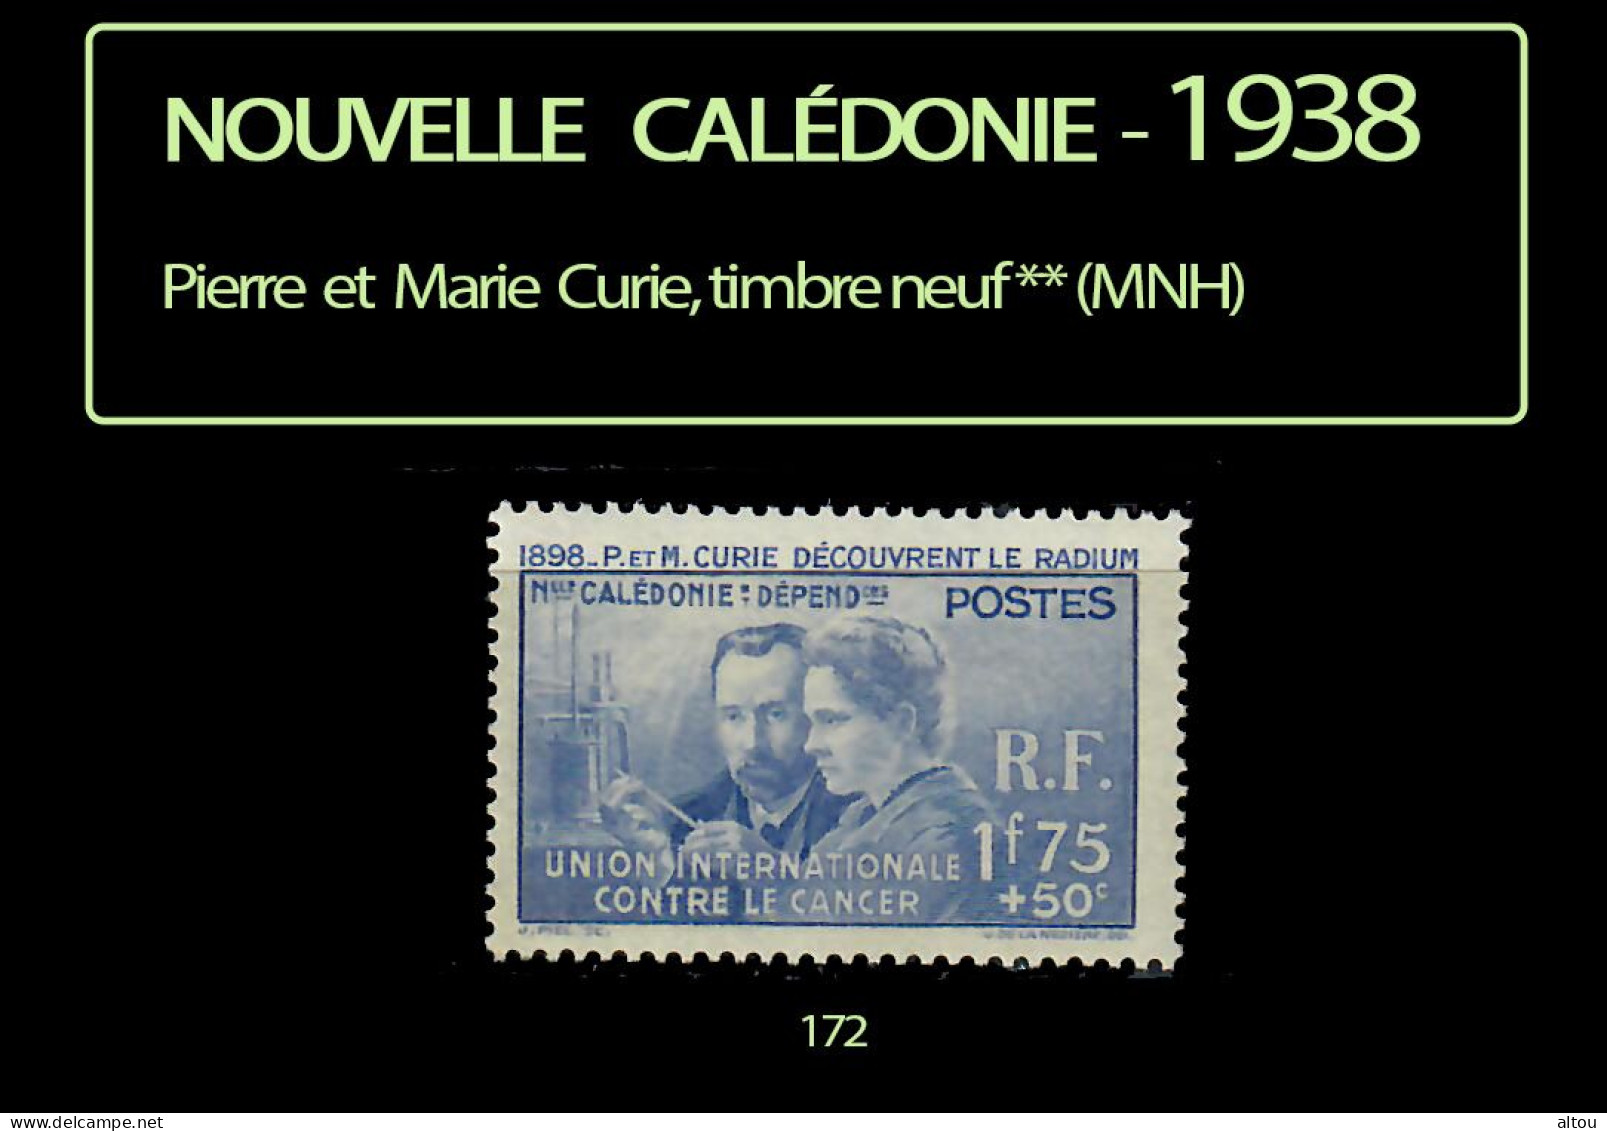 Nouvelle Calédonie 1938 - Pierre Et Marie Curie - Timbre Neuf ** (MNH) - Ongebruikt